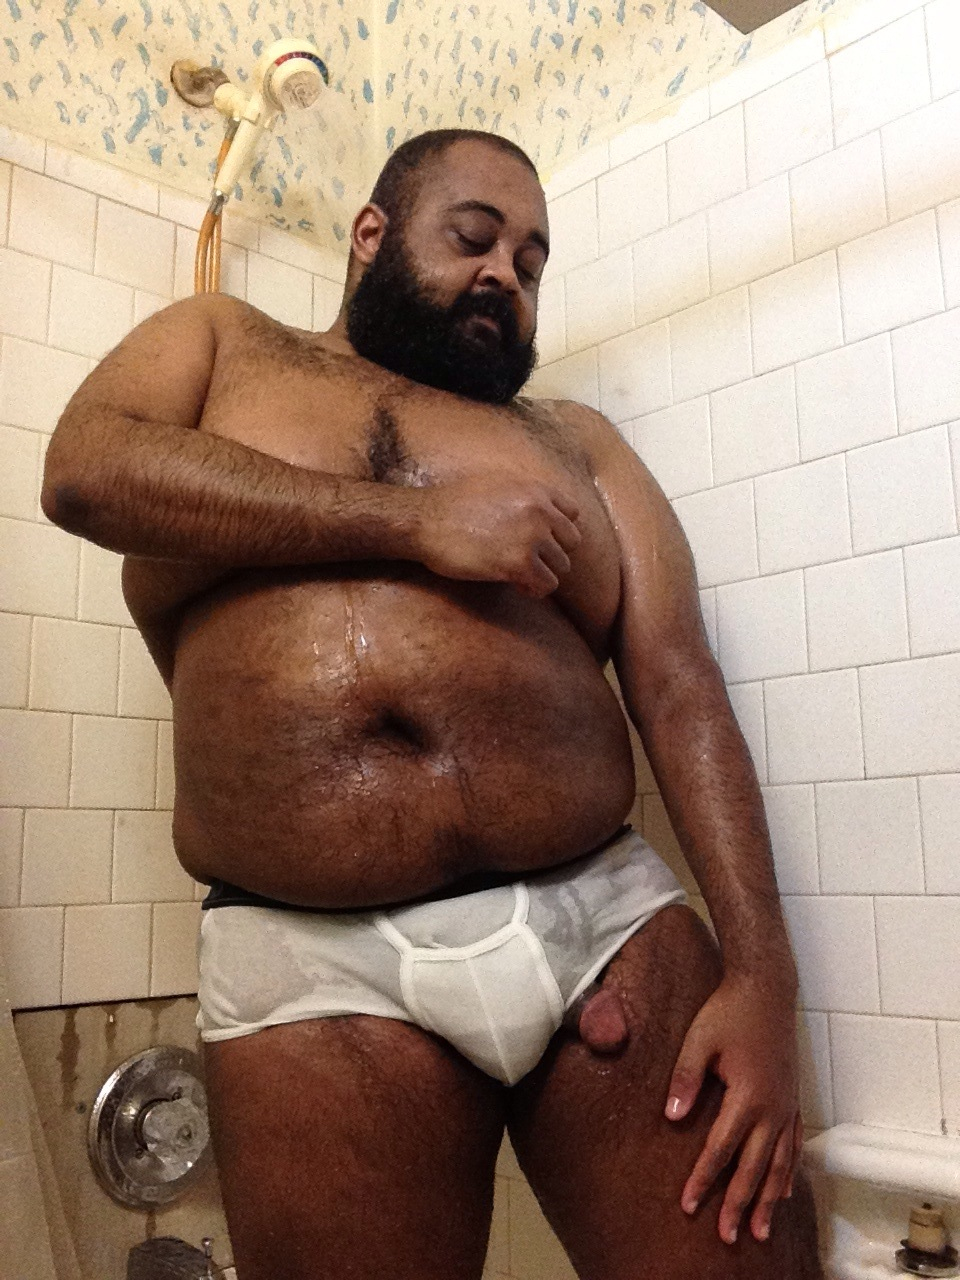 Black Chubby Gay Bear - Chubby Gay Guy Porn Sites - XXX PHOTO